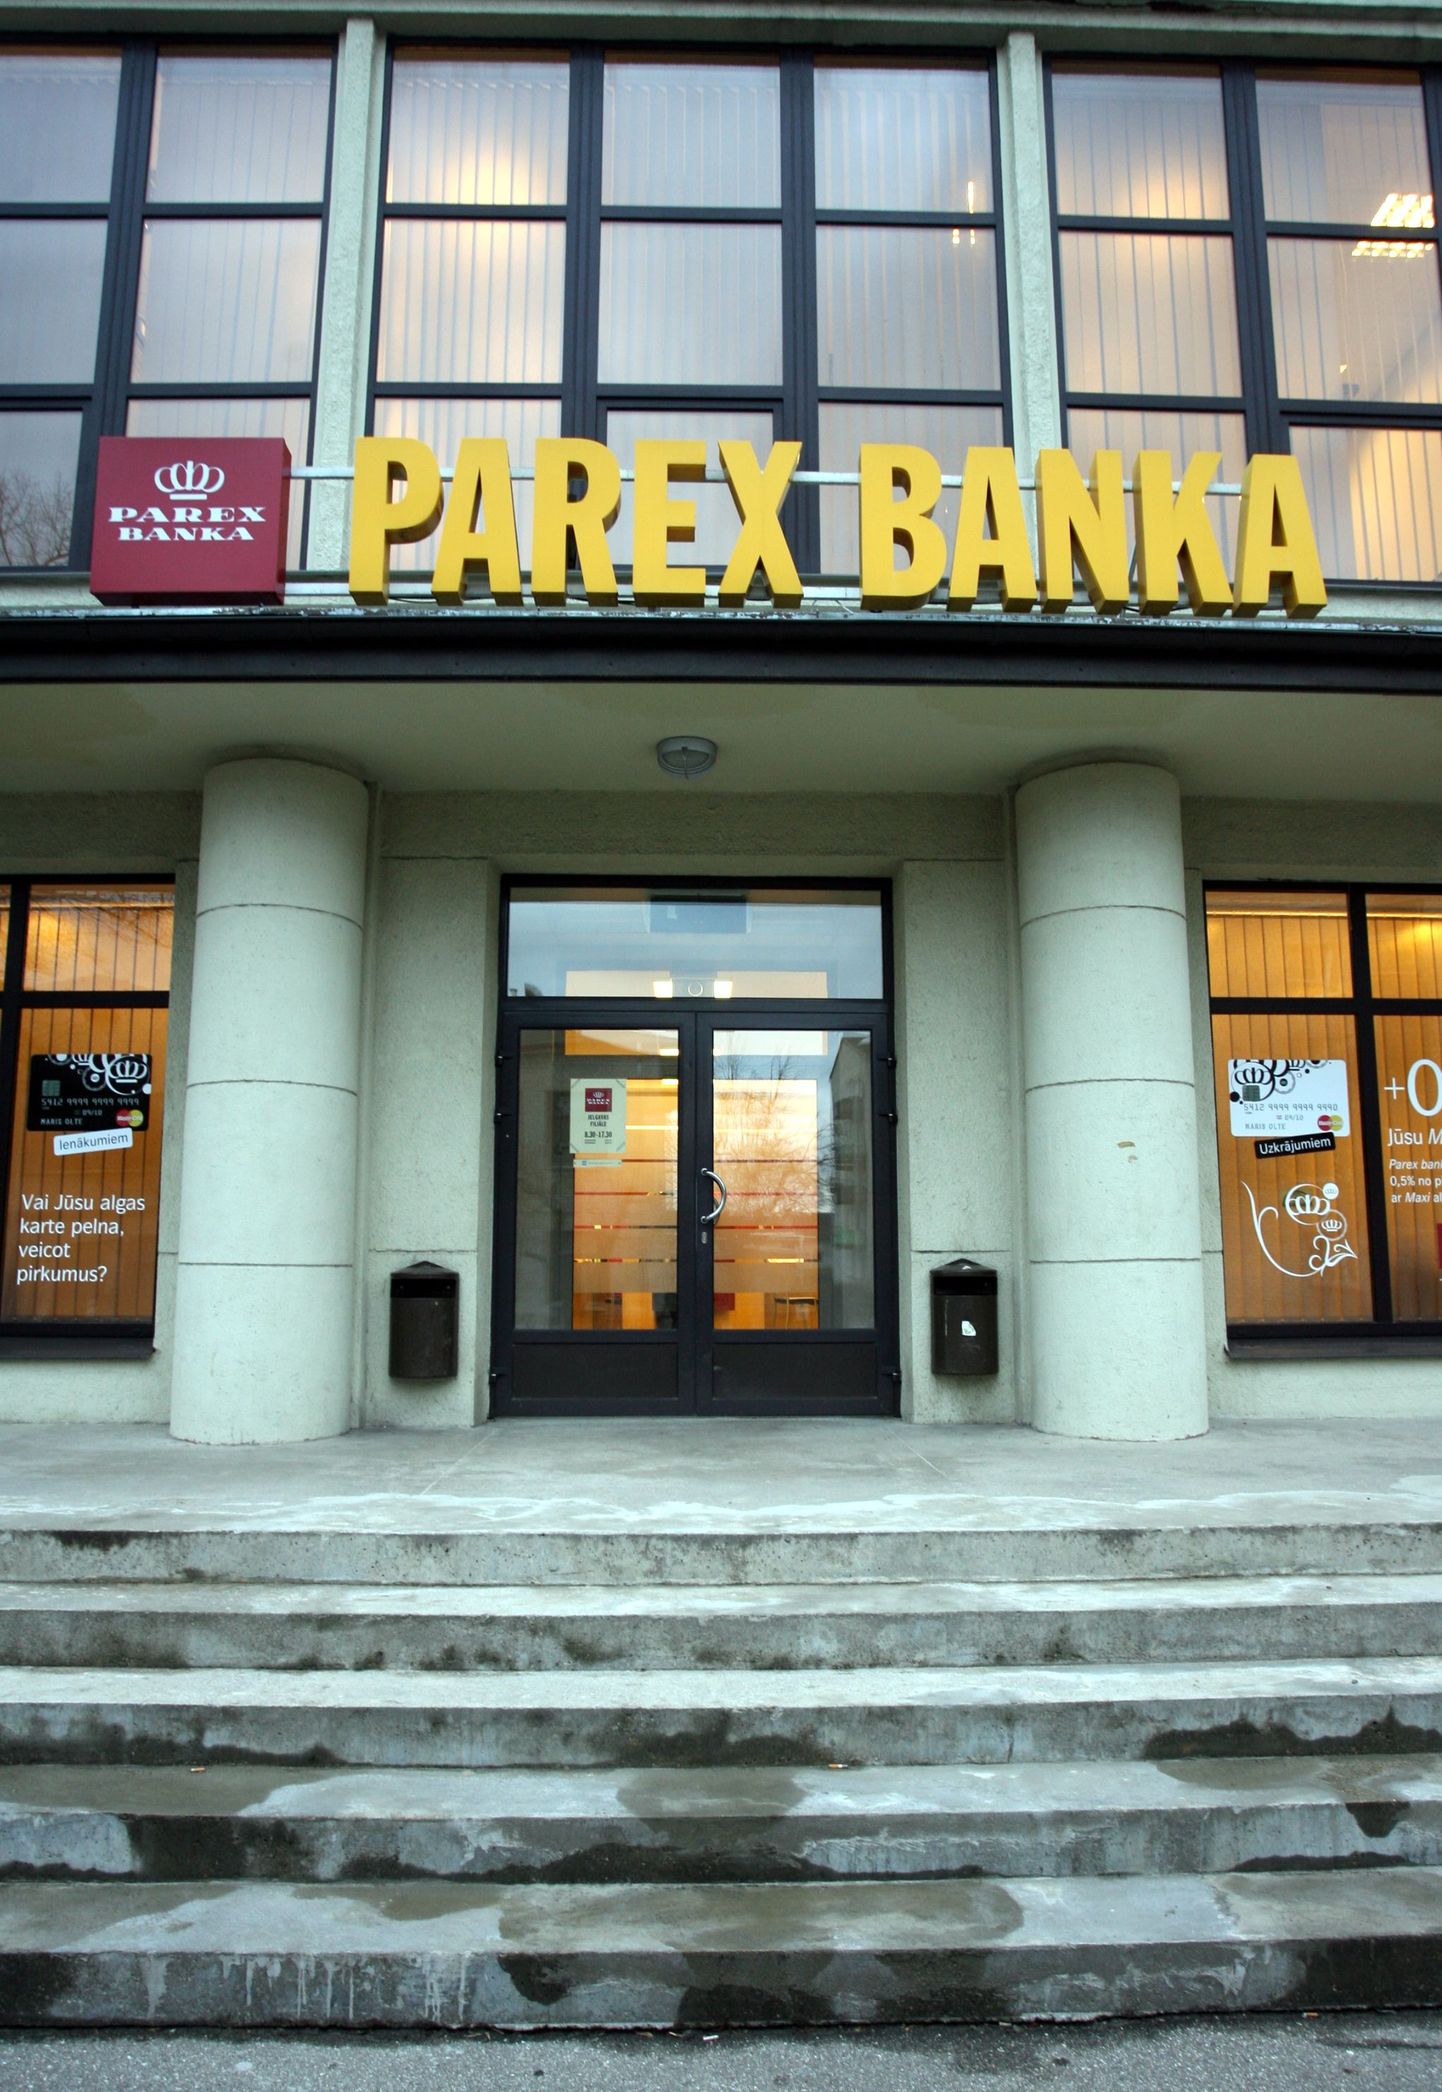 Eesti finantsinspektsioon sai õiguse võtta üle panga juhtimine kui sellega peaks minema samamoodi nagu Läti Parex pangaga. Pildil kunagine Parex panga kontor Jelgavas.